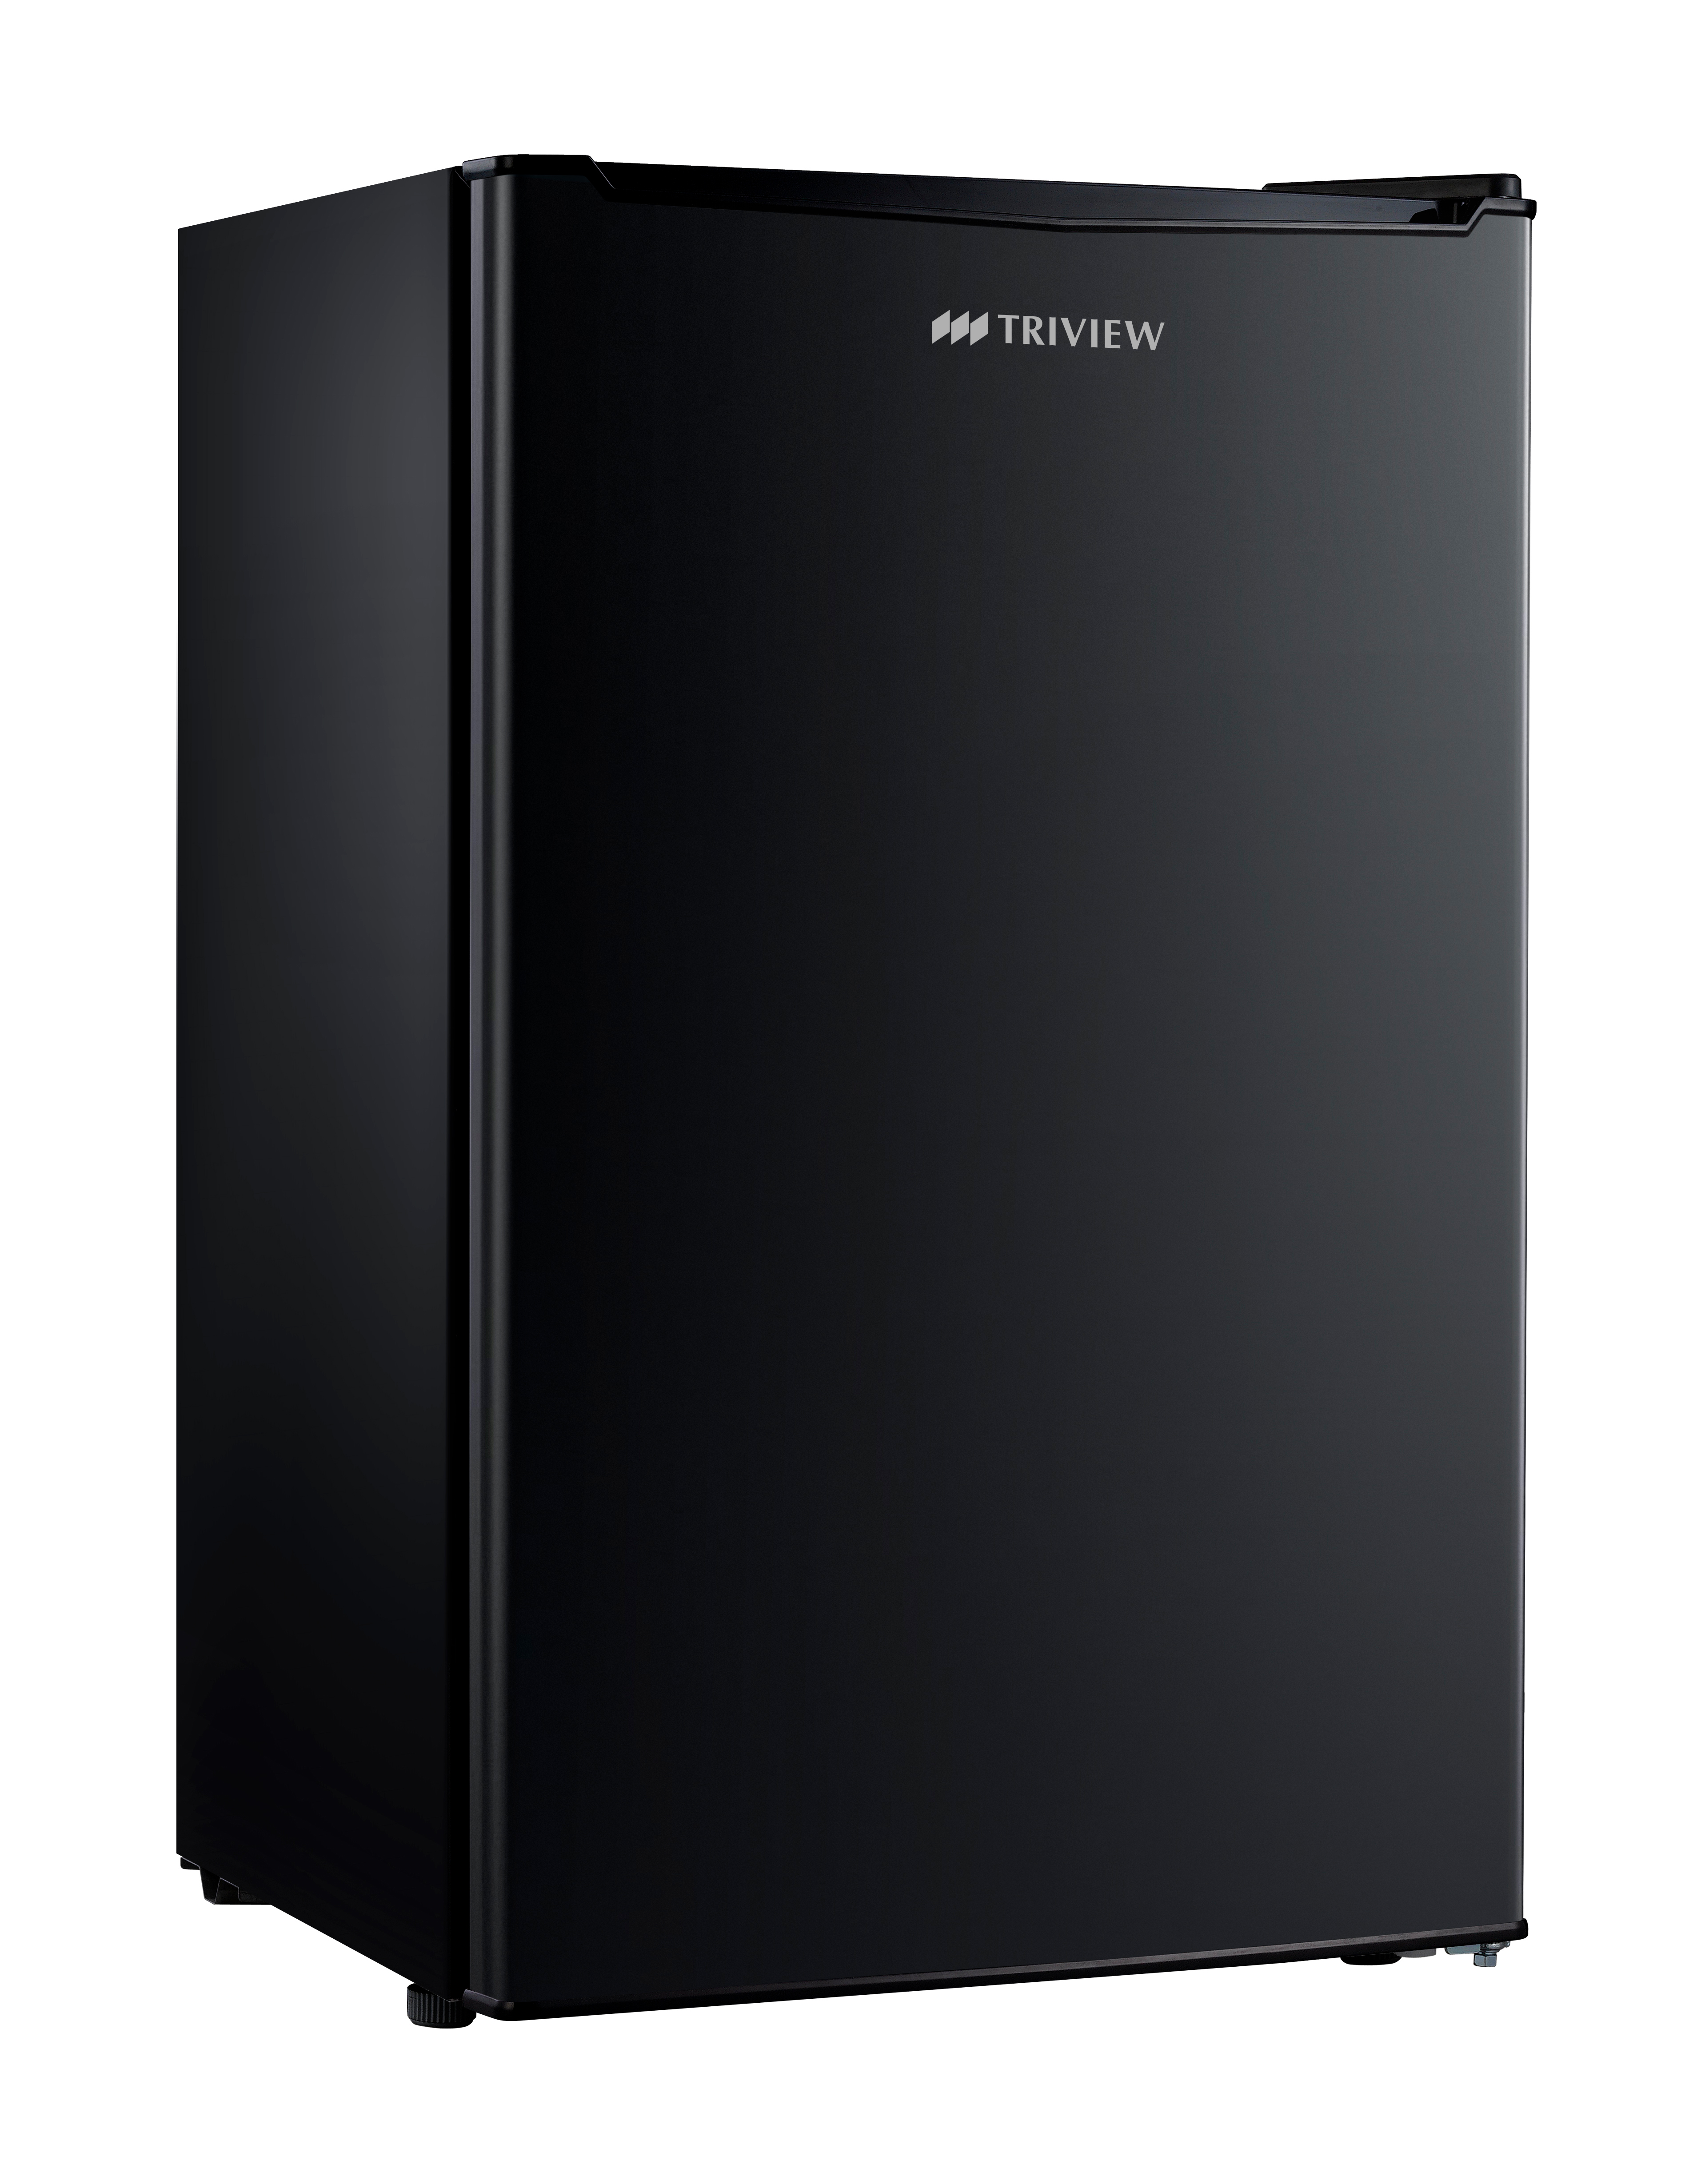 Triview Tatung 35 cu Ft Compact All Refrigerator No Freezer